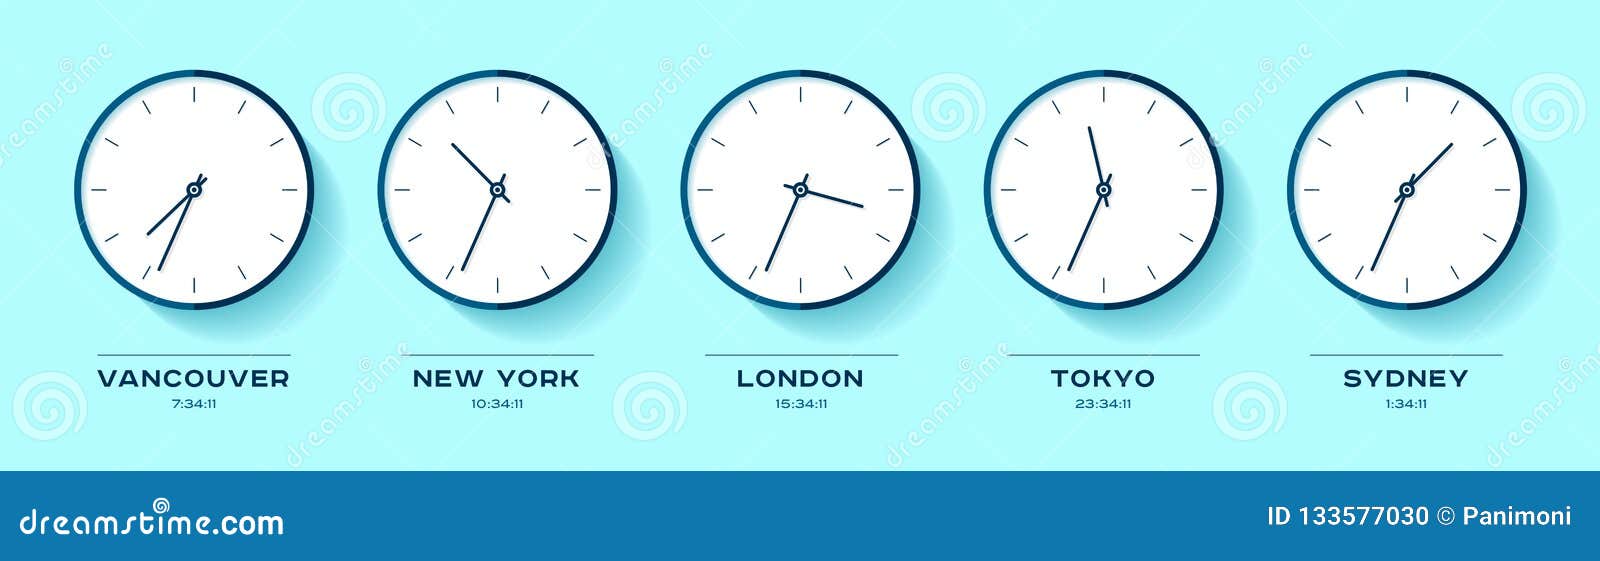 Ванкувер время разница. Часы Москва Лондон Нью-Йорк. Мировые часы Сидней Токио Лондон Нью Йорк. Мировые часы Москва Нью-Йорк Токио Лондон Сидней. Сколько времени в Лондоне.